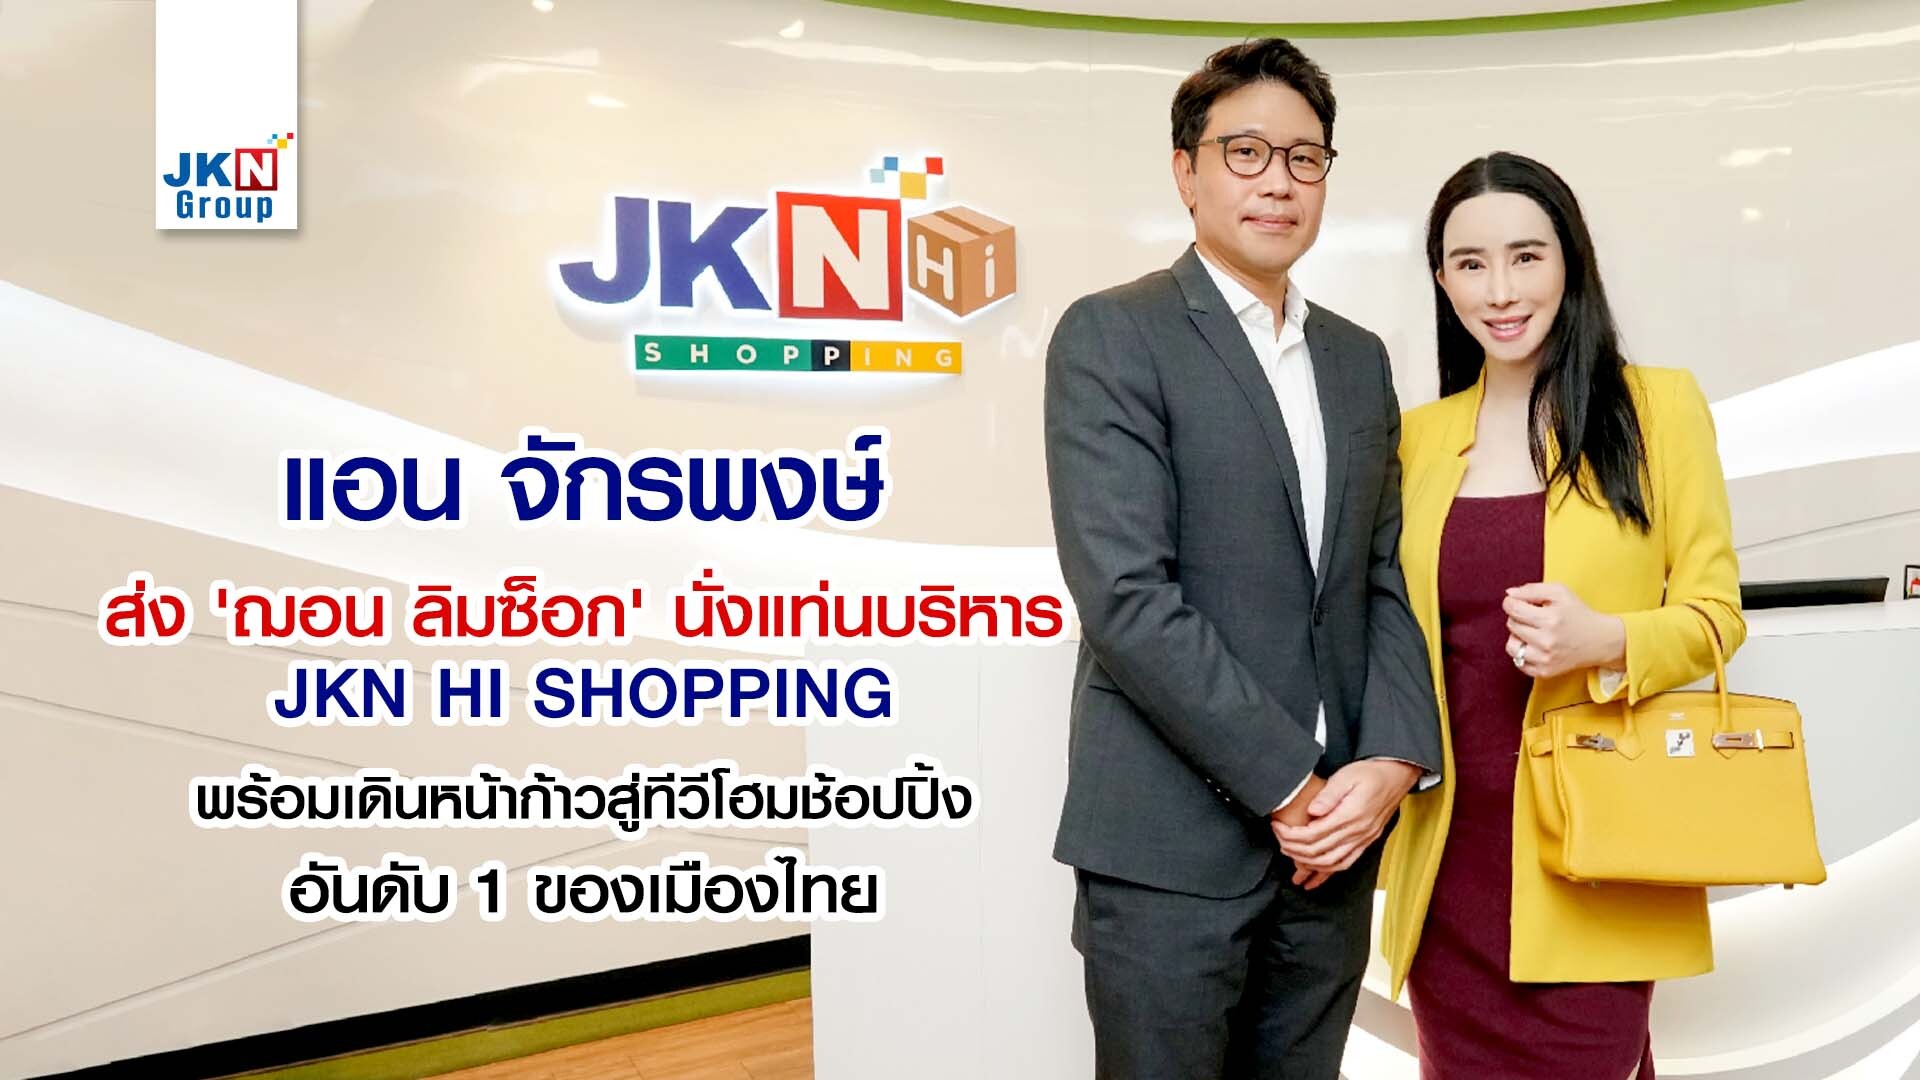 แอน จักรพงษ์ ส่ง ฌอน ลิม ซ็อก นั่งแท่นบริหาร JKN Hi Shopping พร้อมเดินหน้าก้าวสู่ทีวีโฮมช้อปปิ้งอันดับ 1 ของเมืองไทย  ตั้งเป้าปี 2565 ทำยอดขายโต 30% รับจังหวะเศรษฐกิจไทยฟื้นตัว